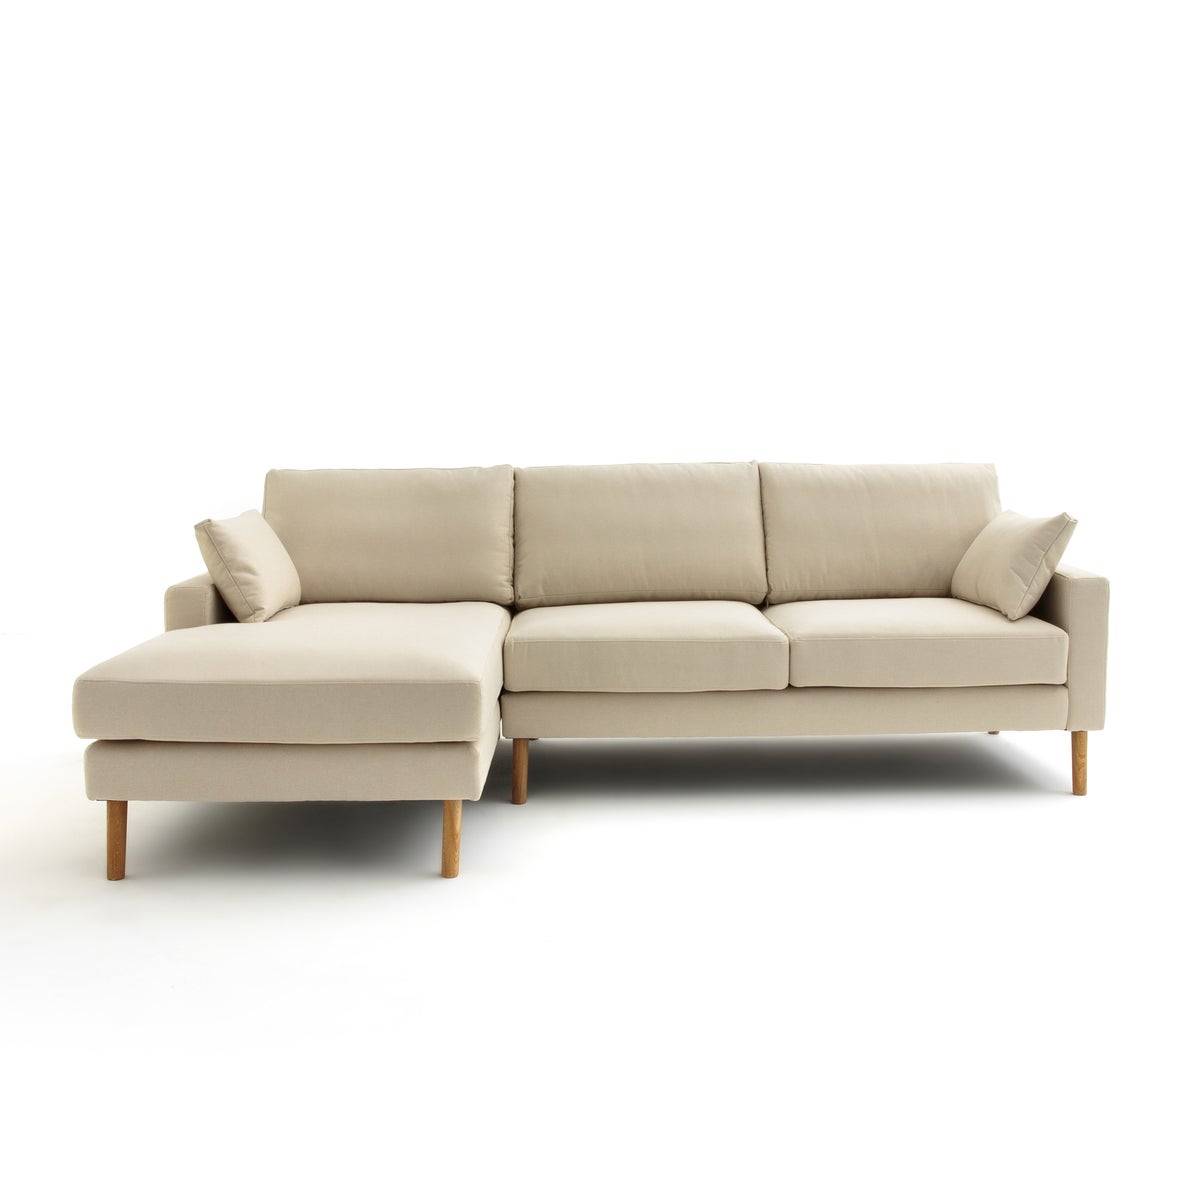 Sofá con chaise longue de tejido texturizado en color beige modelo Stockholm de La Redoute